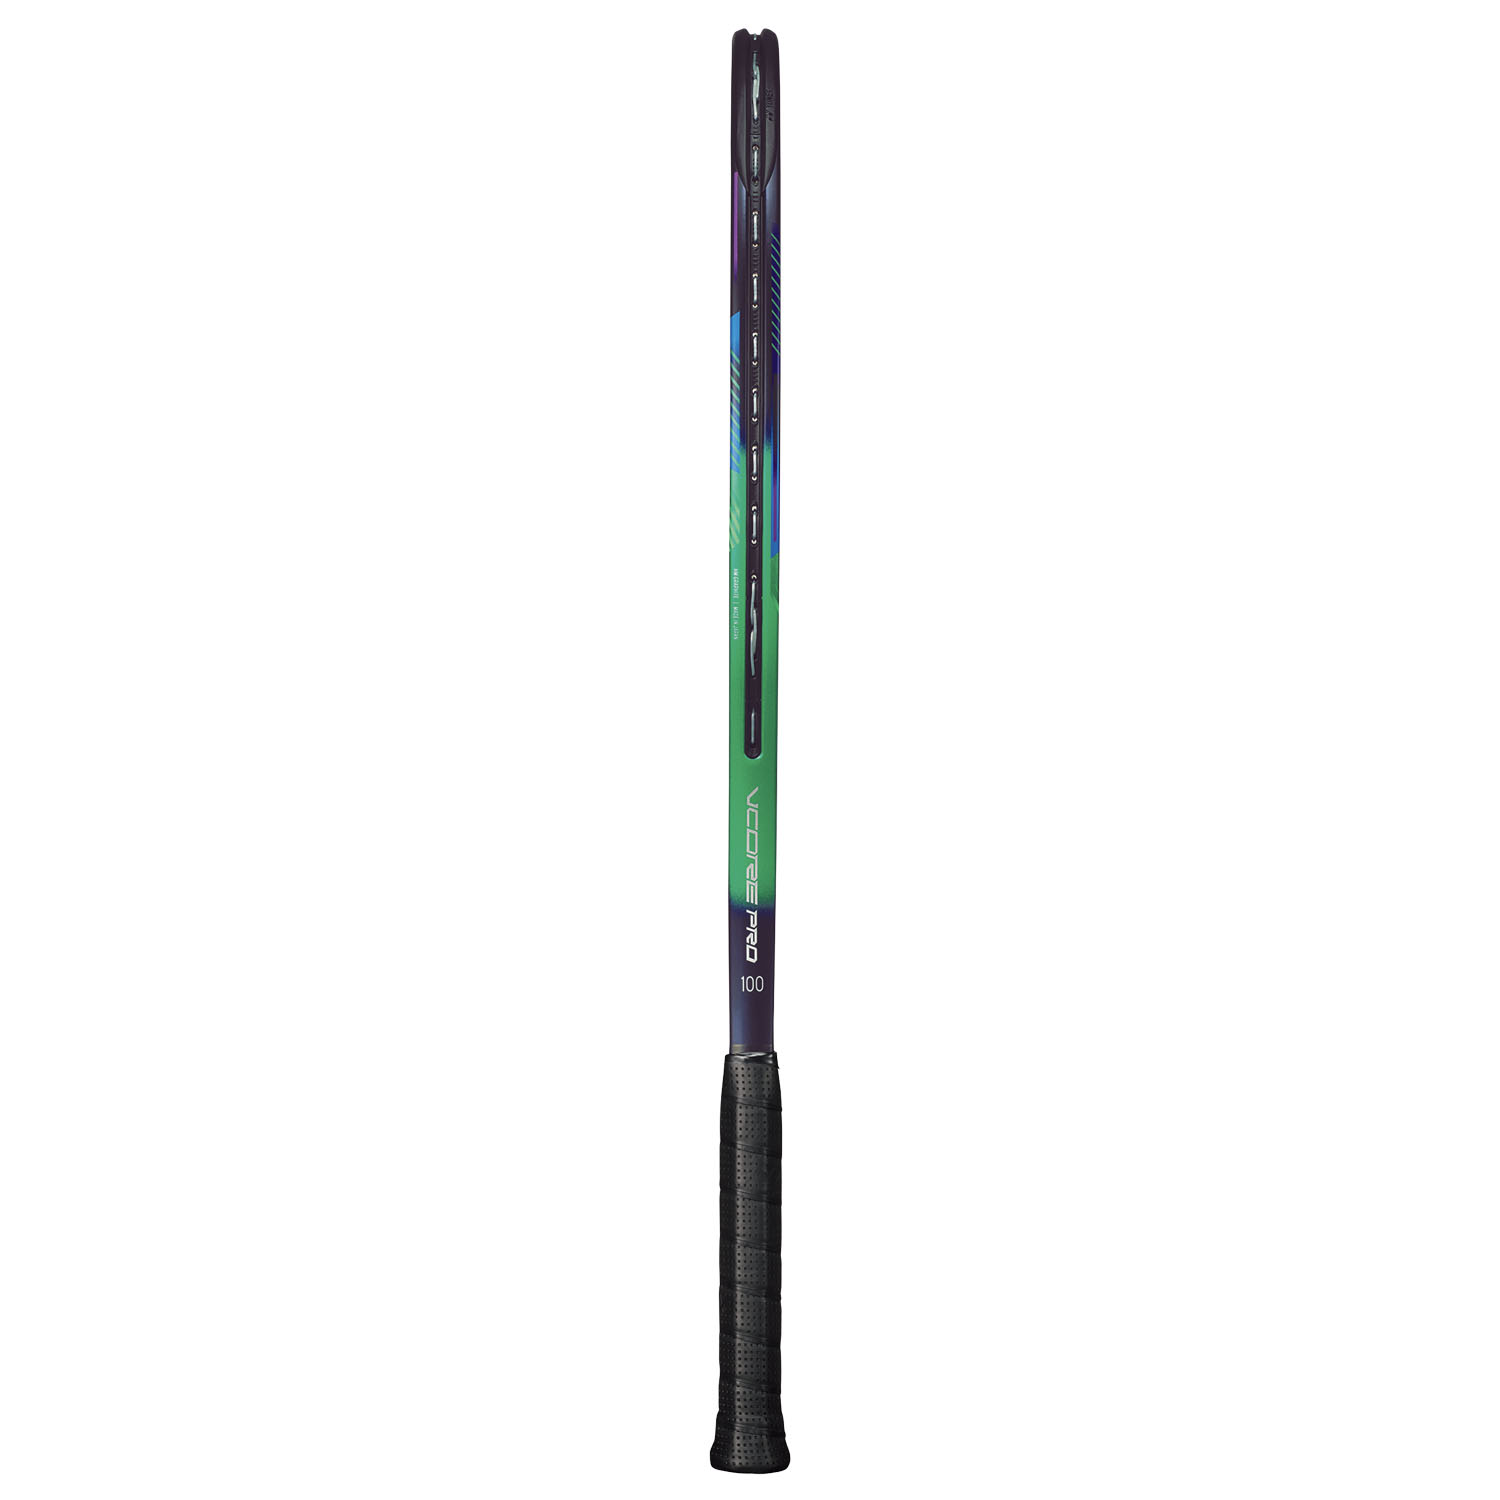 Yonex Vcore Pro 100 (300gr) - Green/Purple